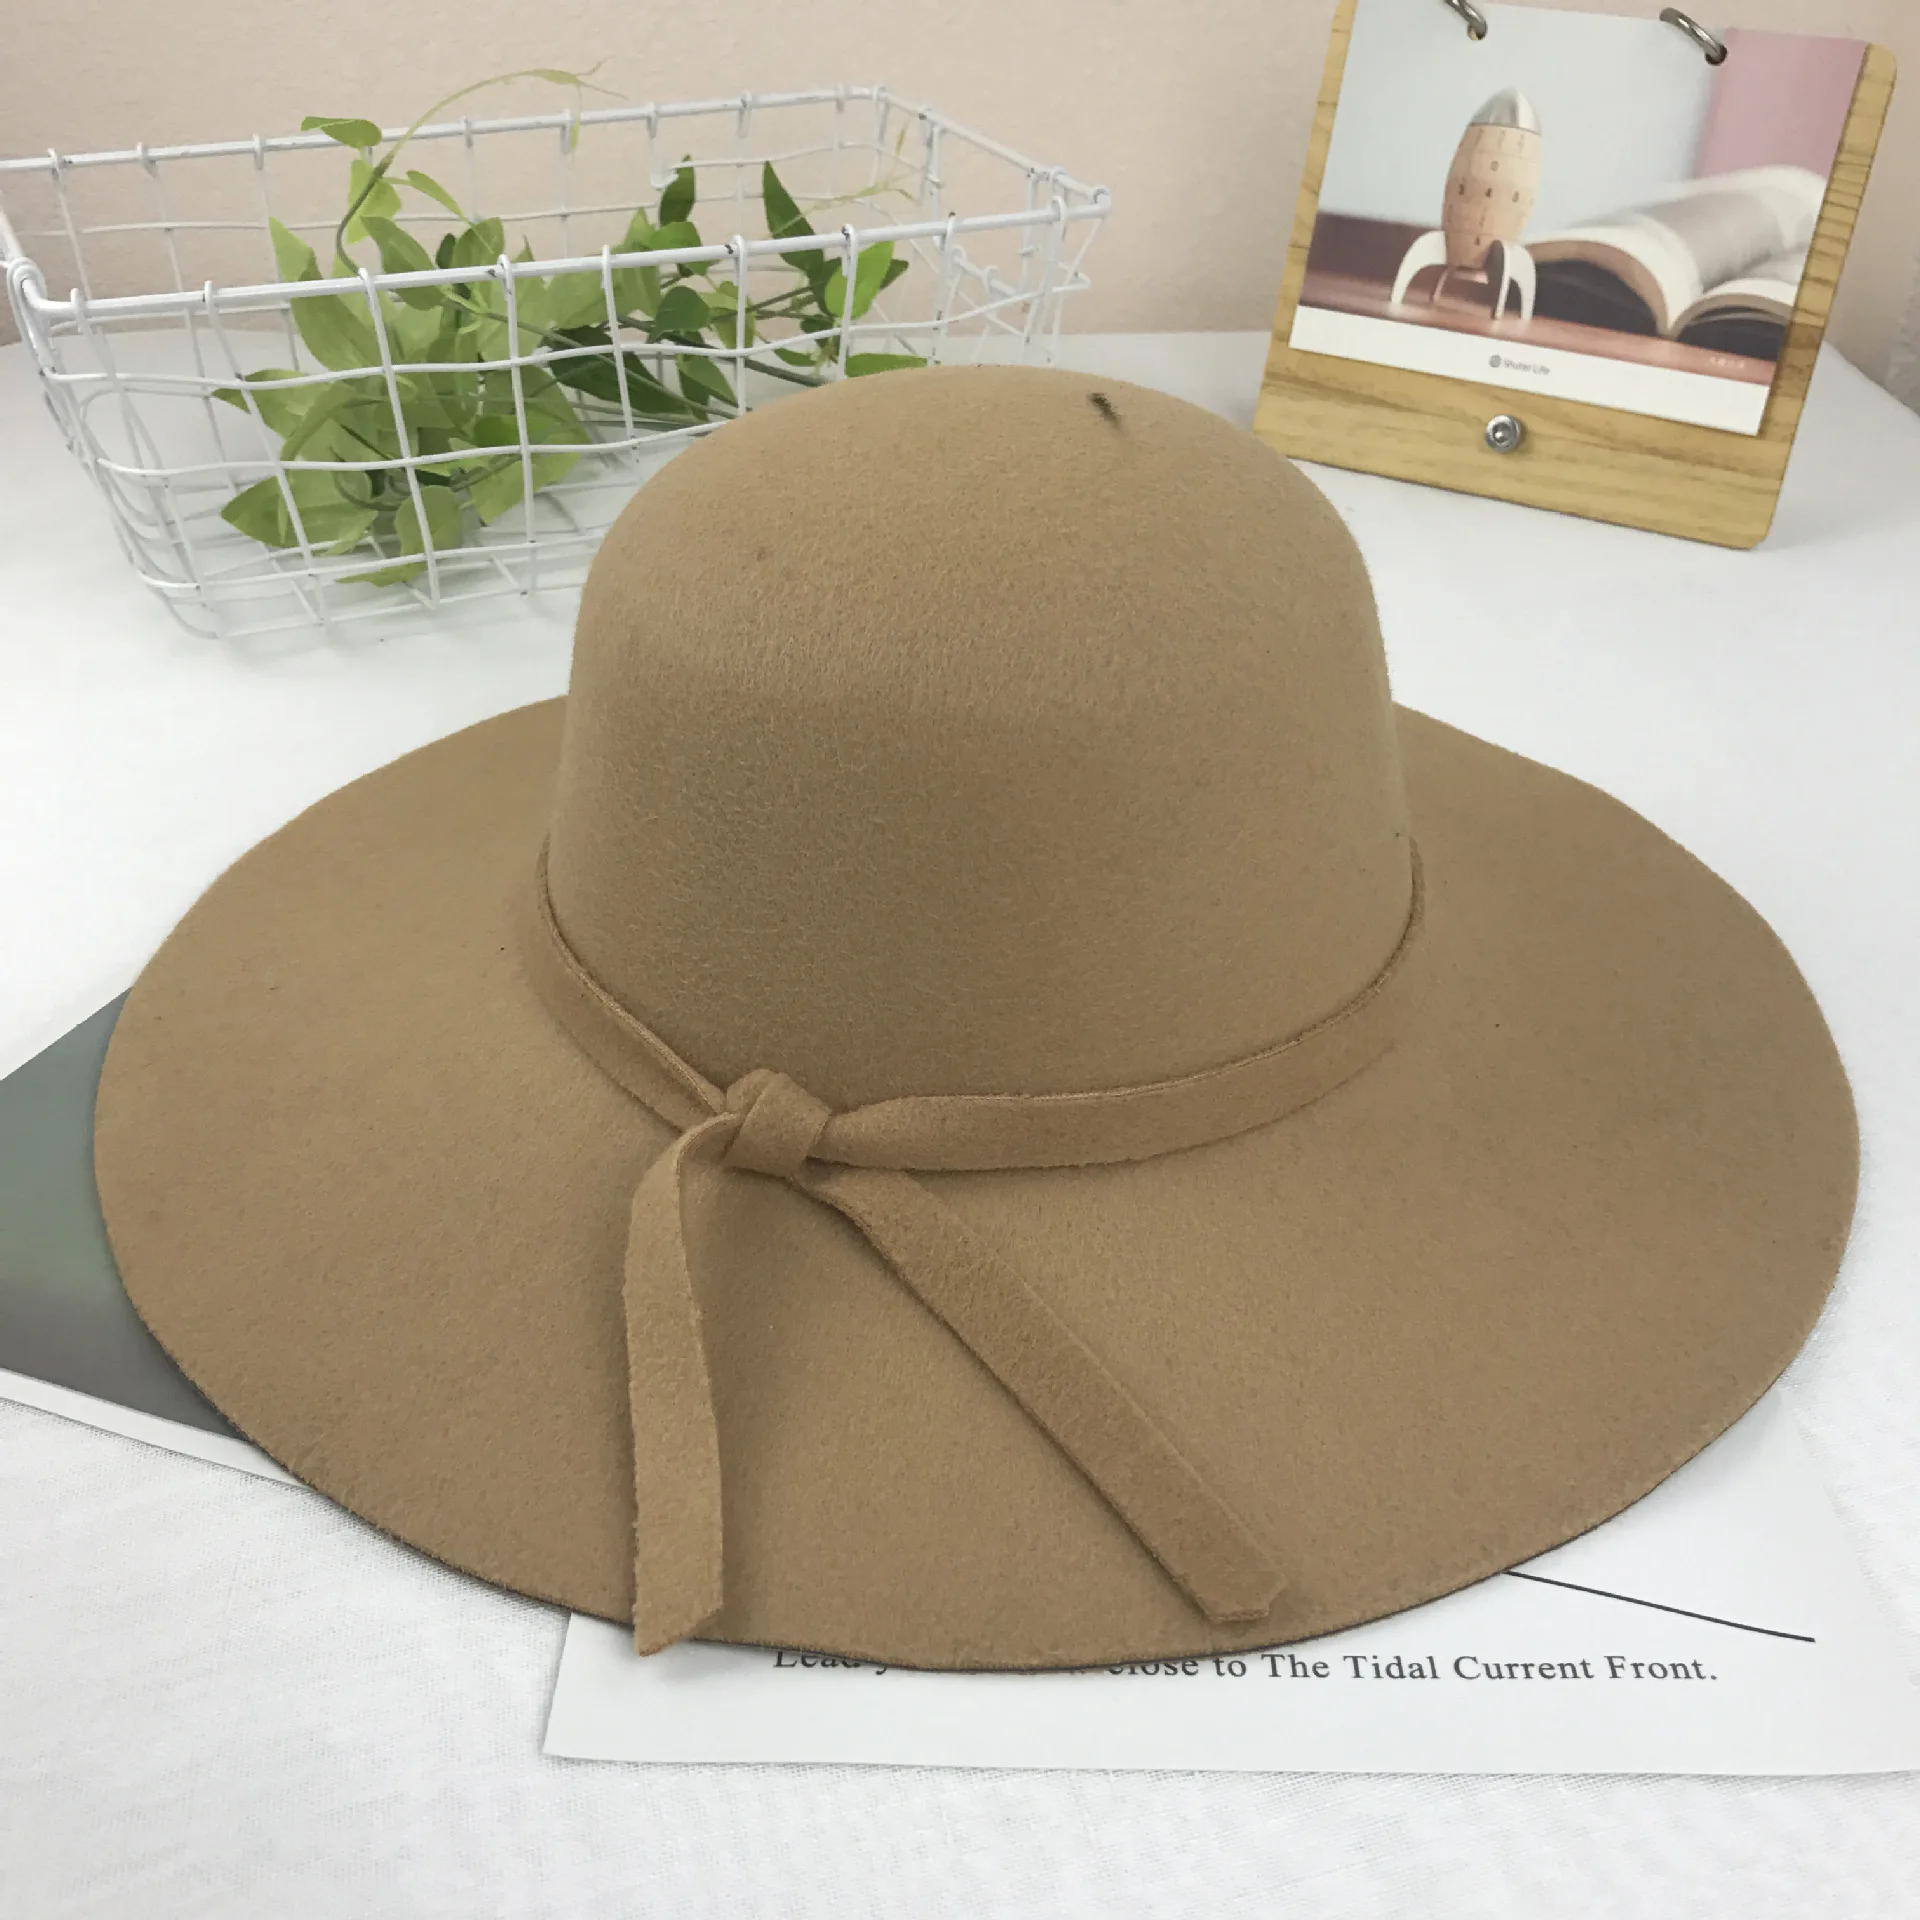 Женская панама коричневая замша мода большой край твердая шерсть фланелет складывающаяся Кепка шляпа купол осень зима теплая Повседневная шляпа